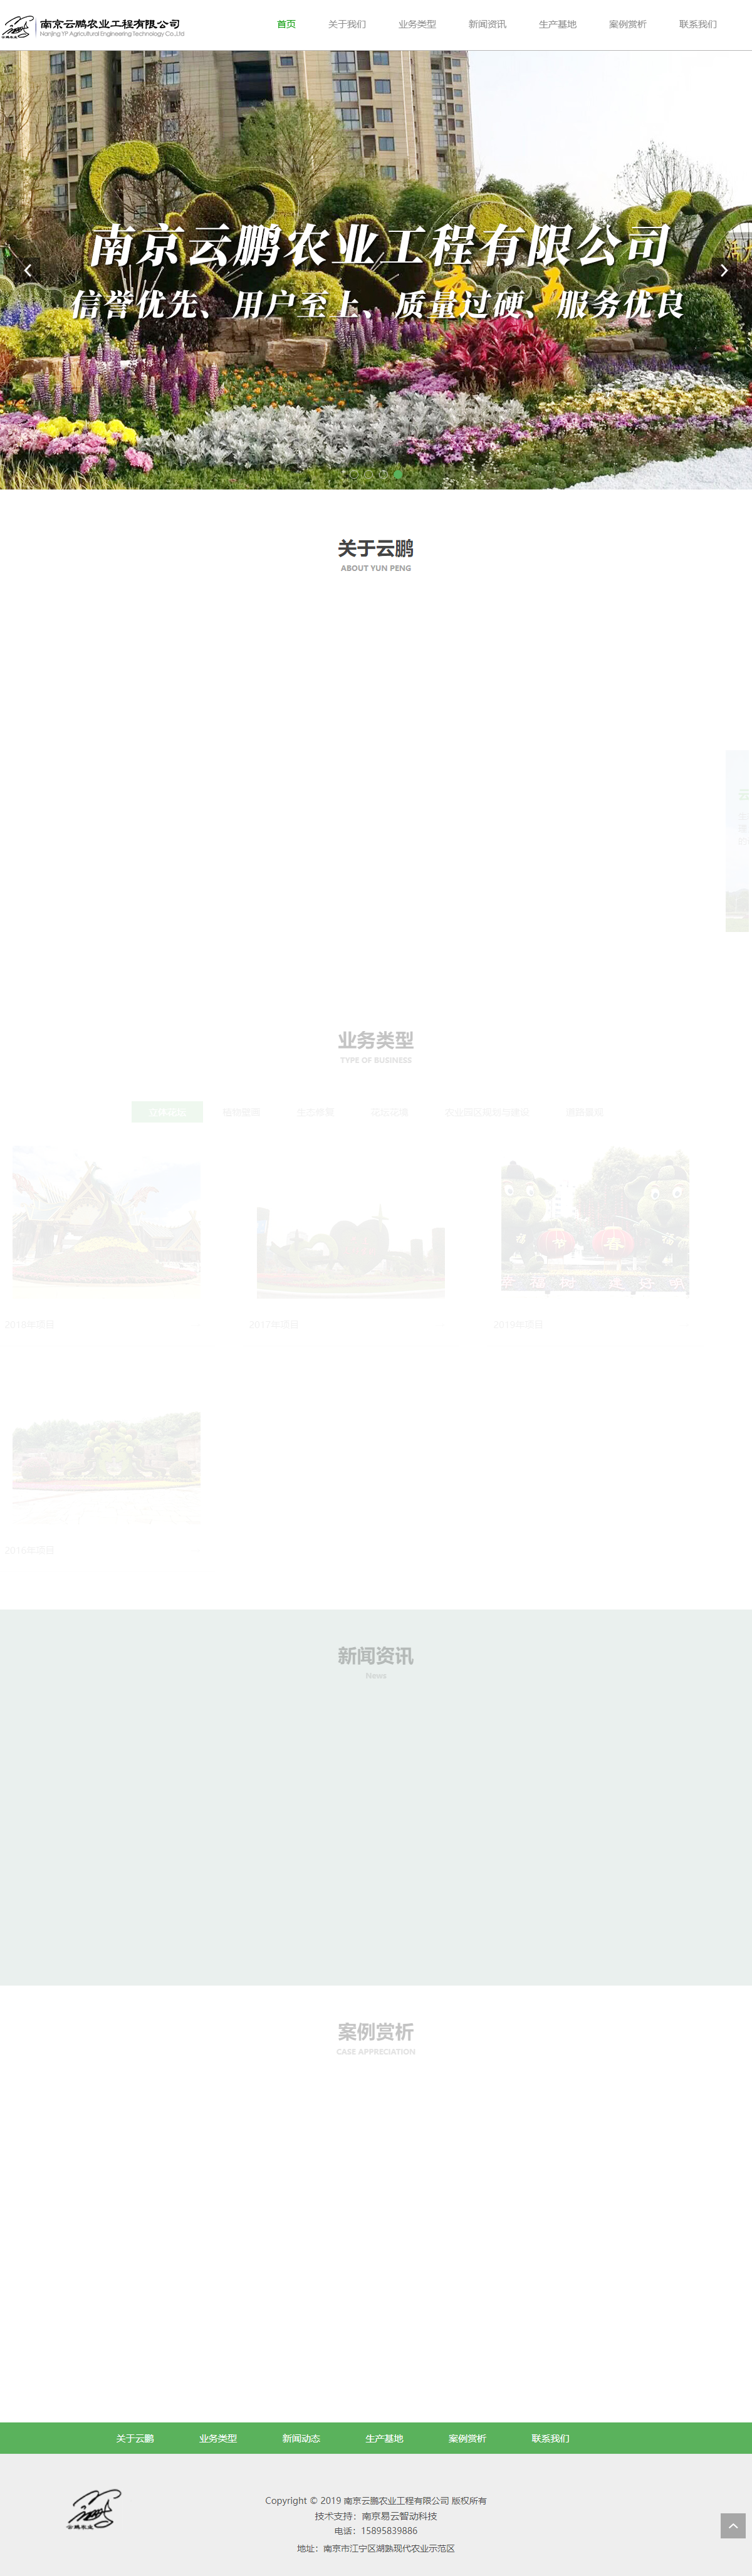 南京云鹏农业工程有限公司网站案例